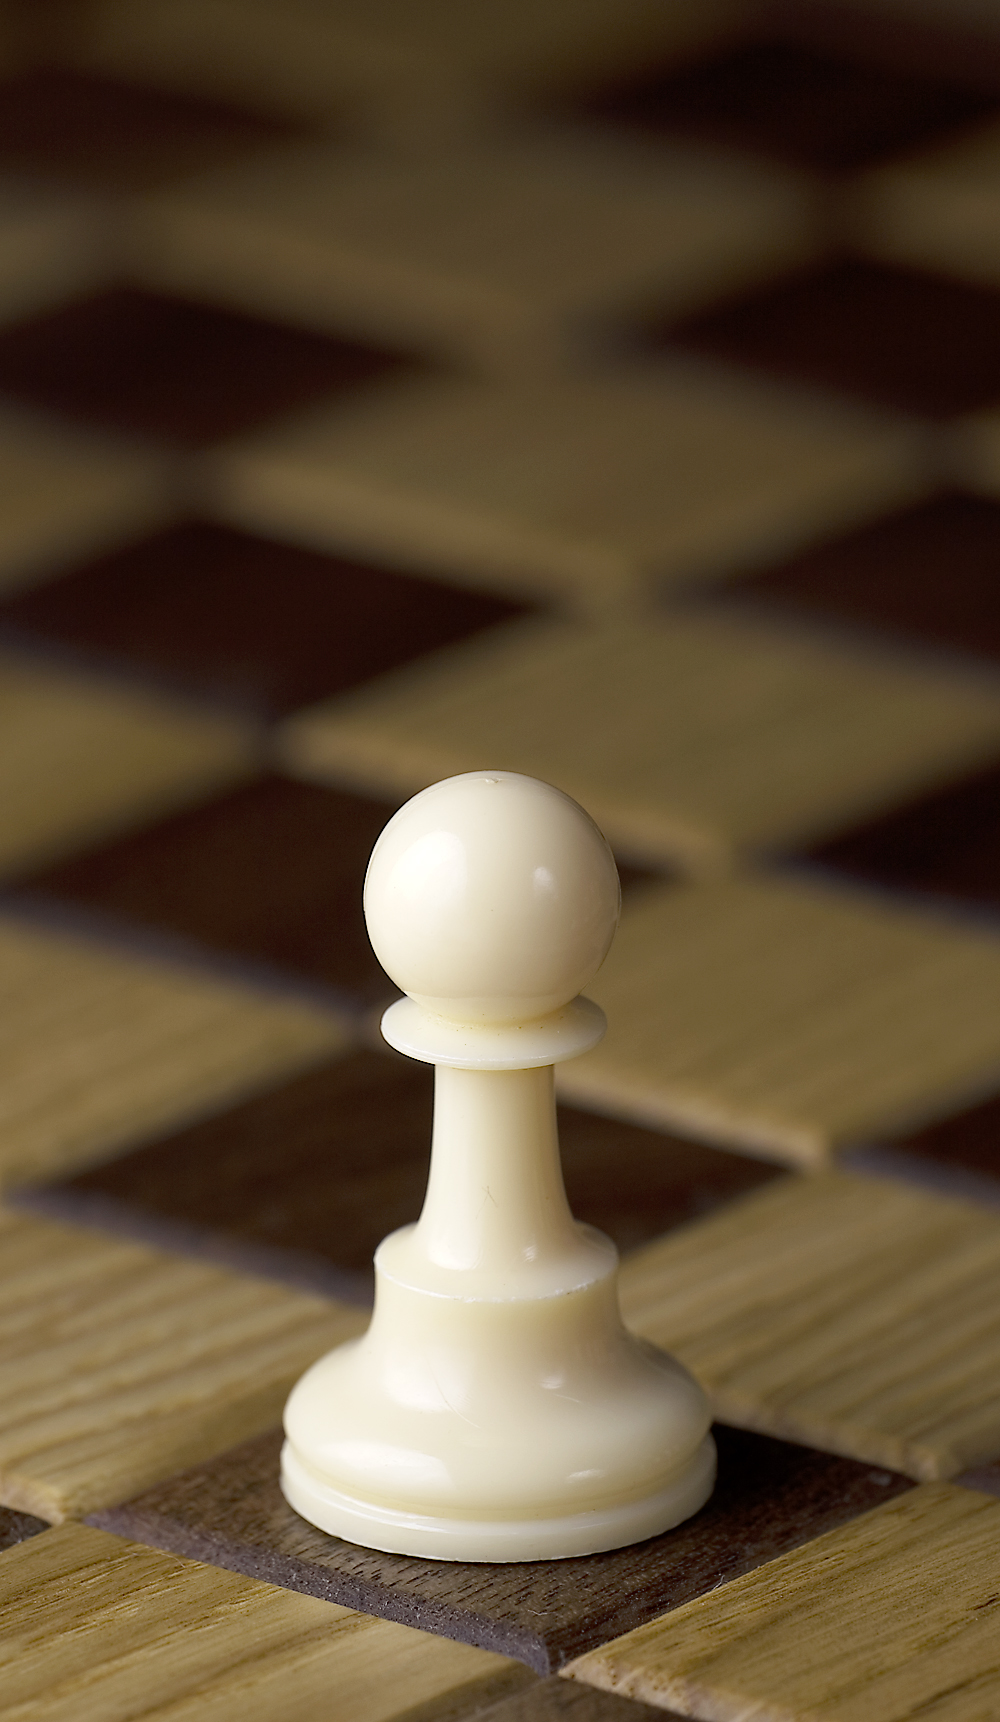 Chess_piece_-_White_pawn